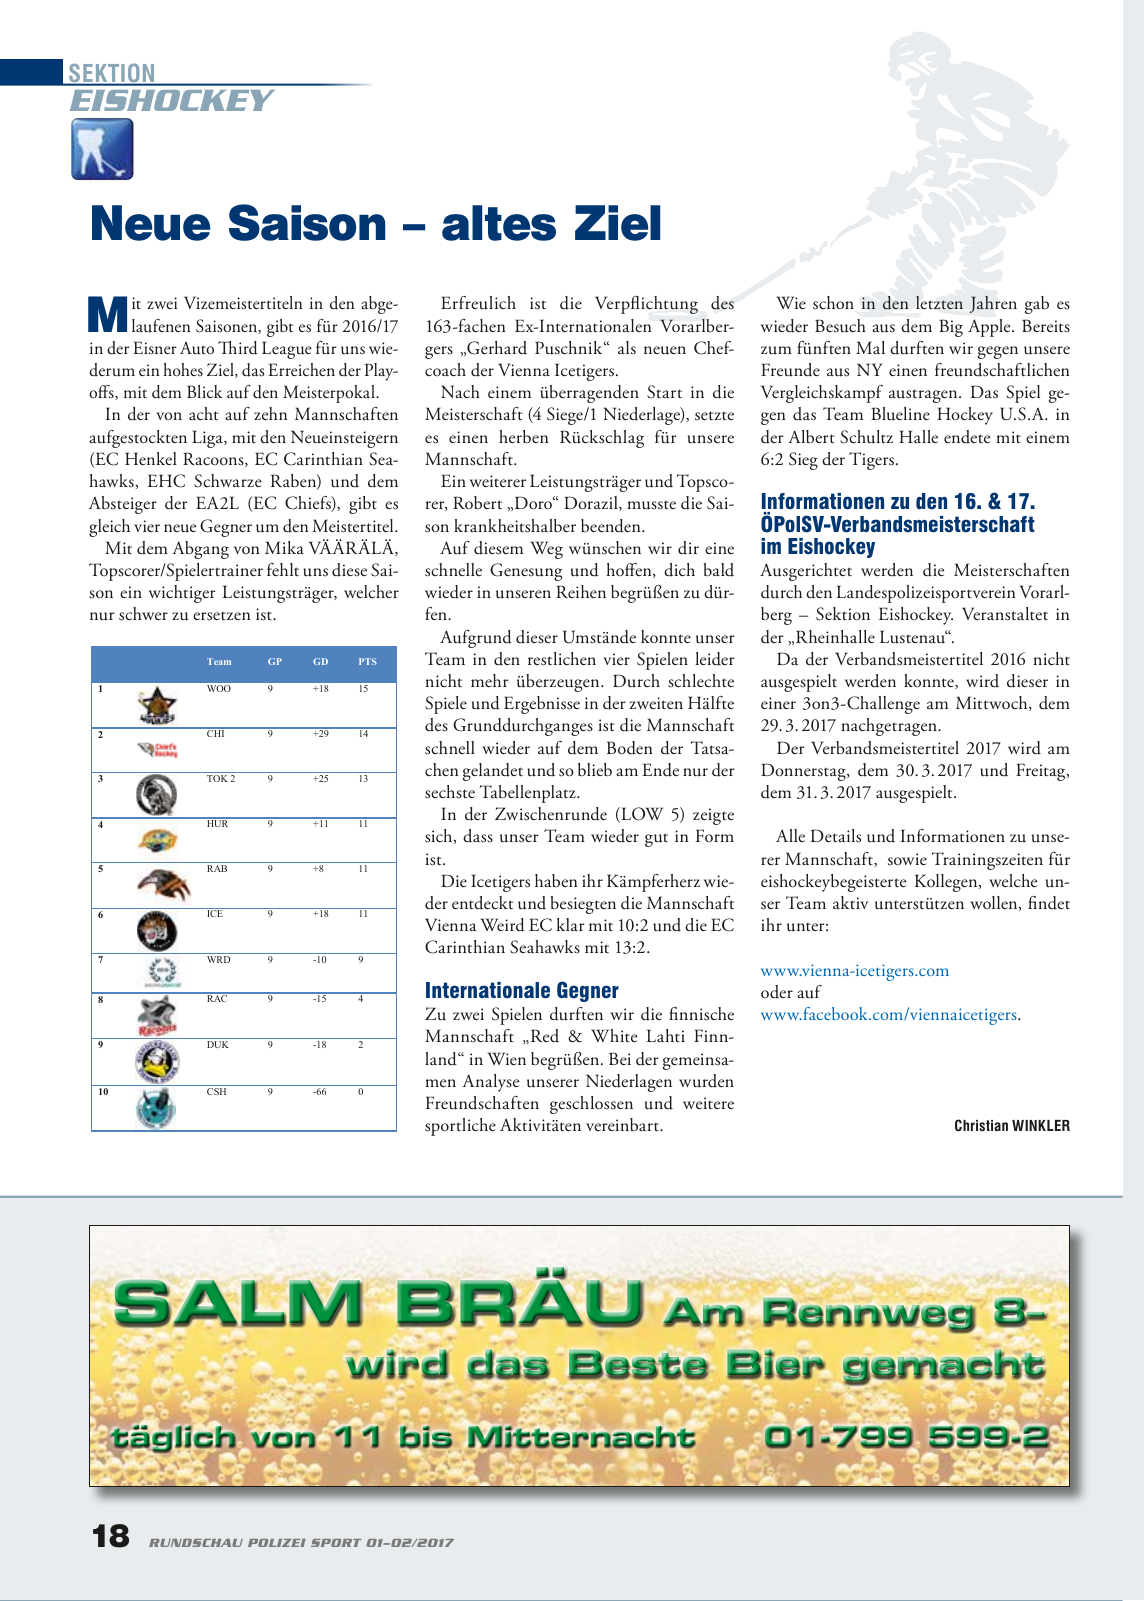 Vorschau Rundschau Polizei Sport 01-02/2017 Seite 18